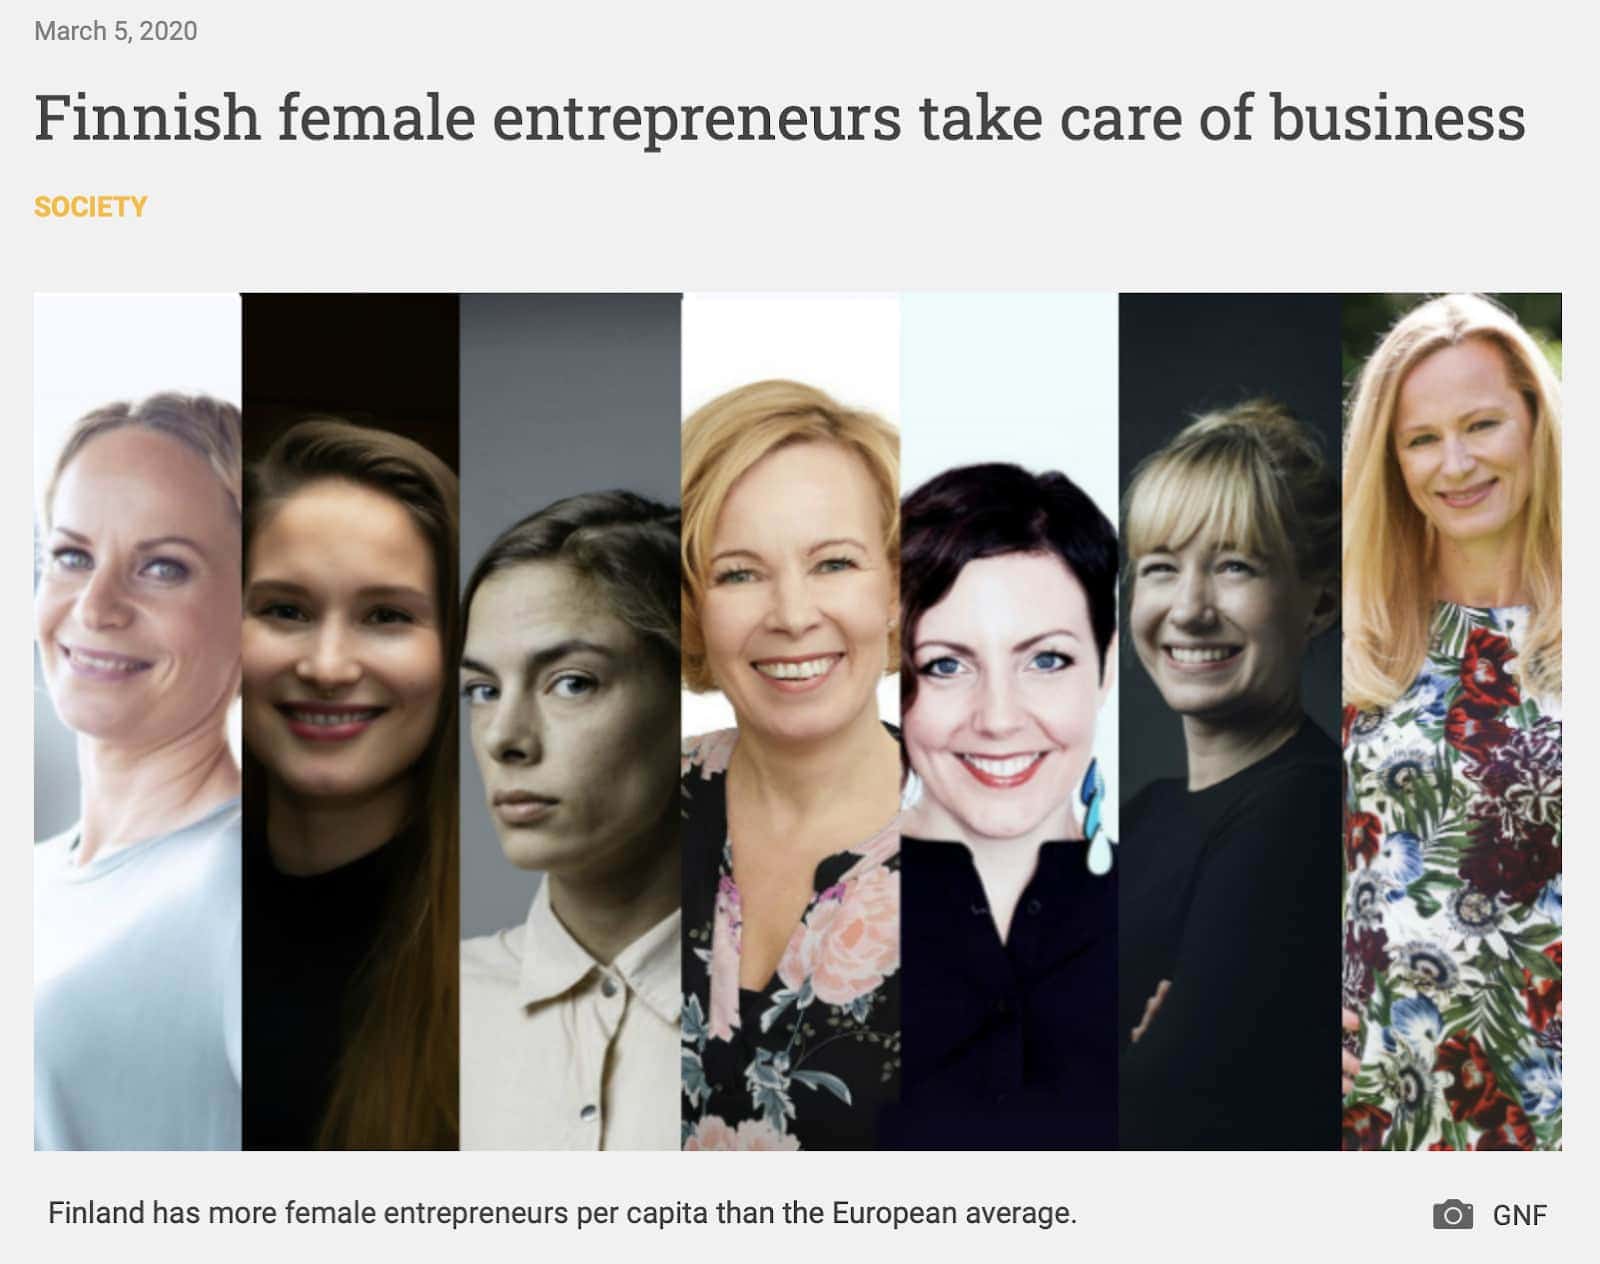 women's entrepreneurial